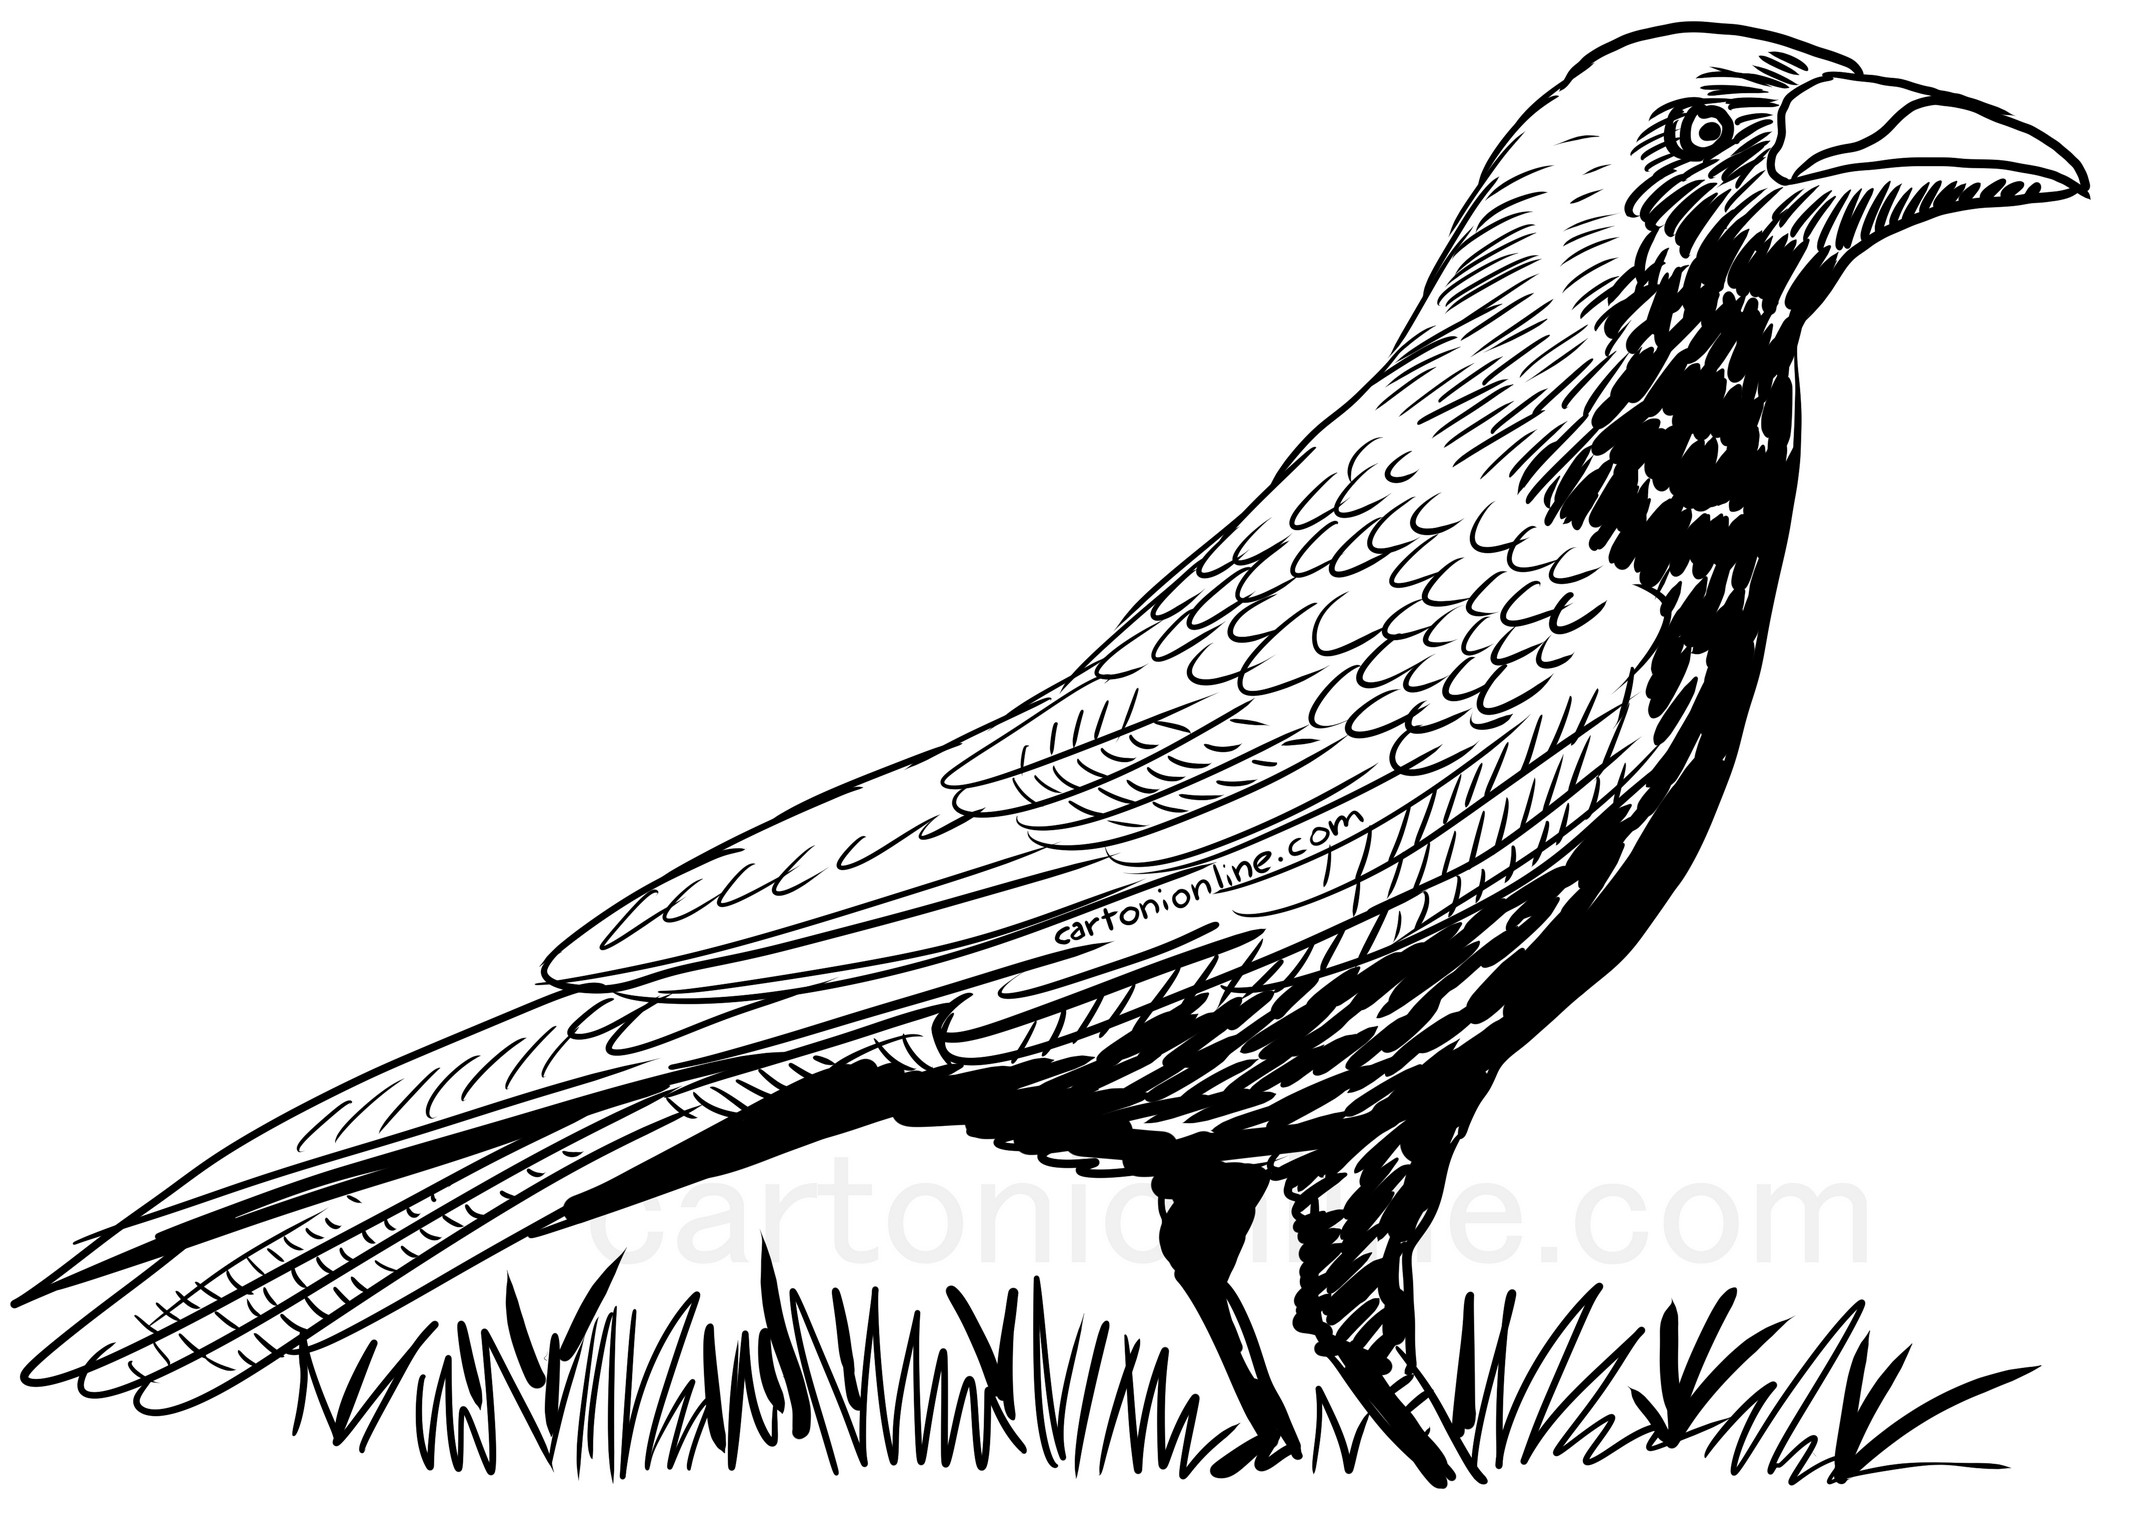 Disegno di corvo realistico da colorare